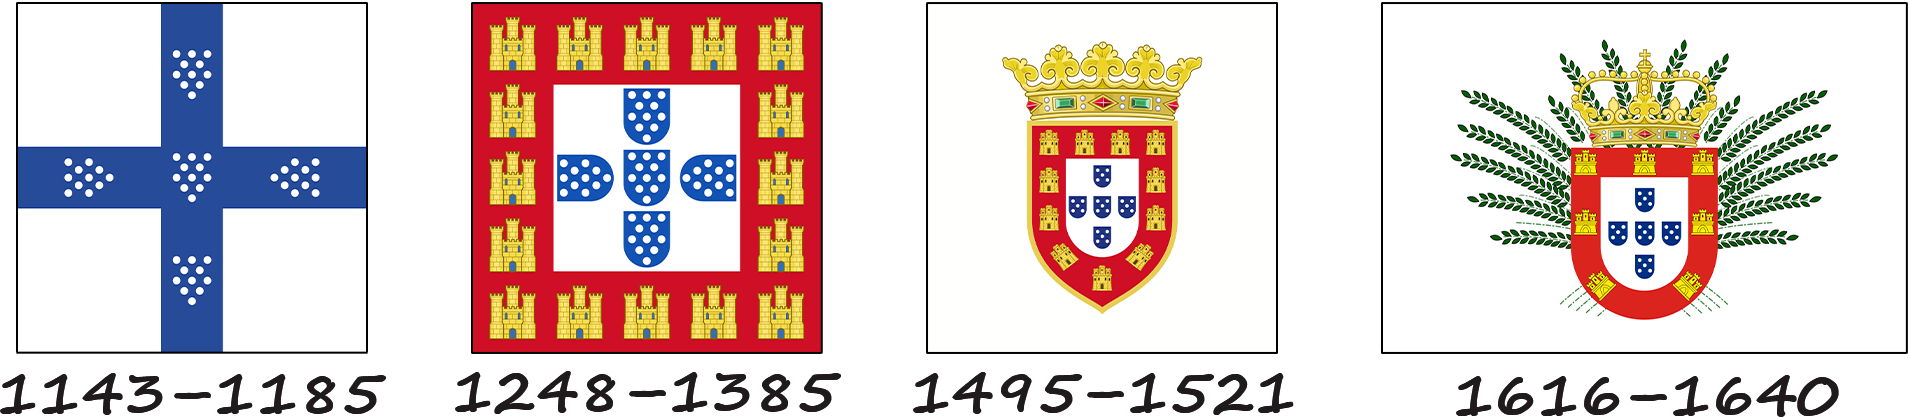 Historia de la bandera portuguesa